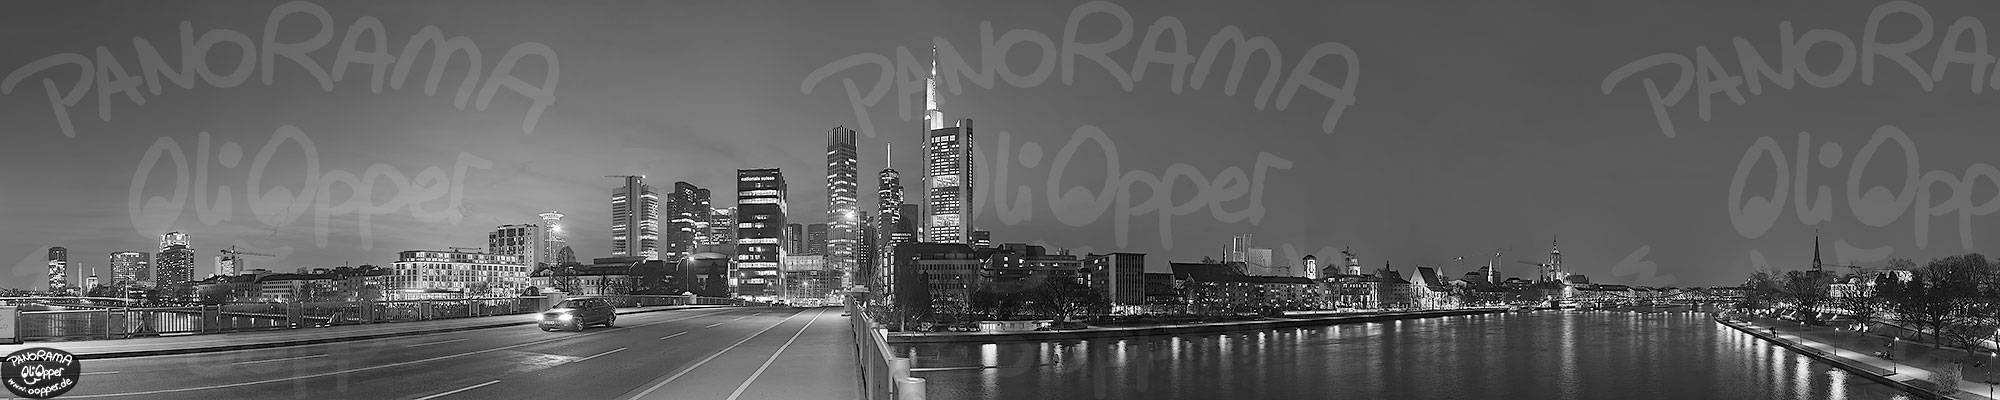 Frankfurt - schwarz/wei� - Nacht - p8457 - (c) by Oliver Opper